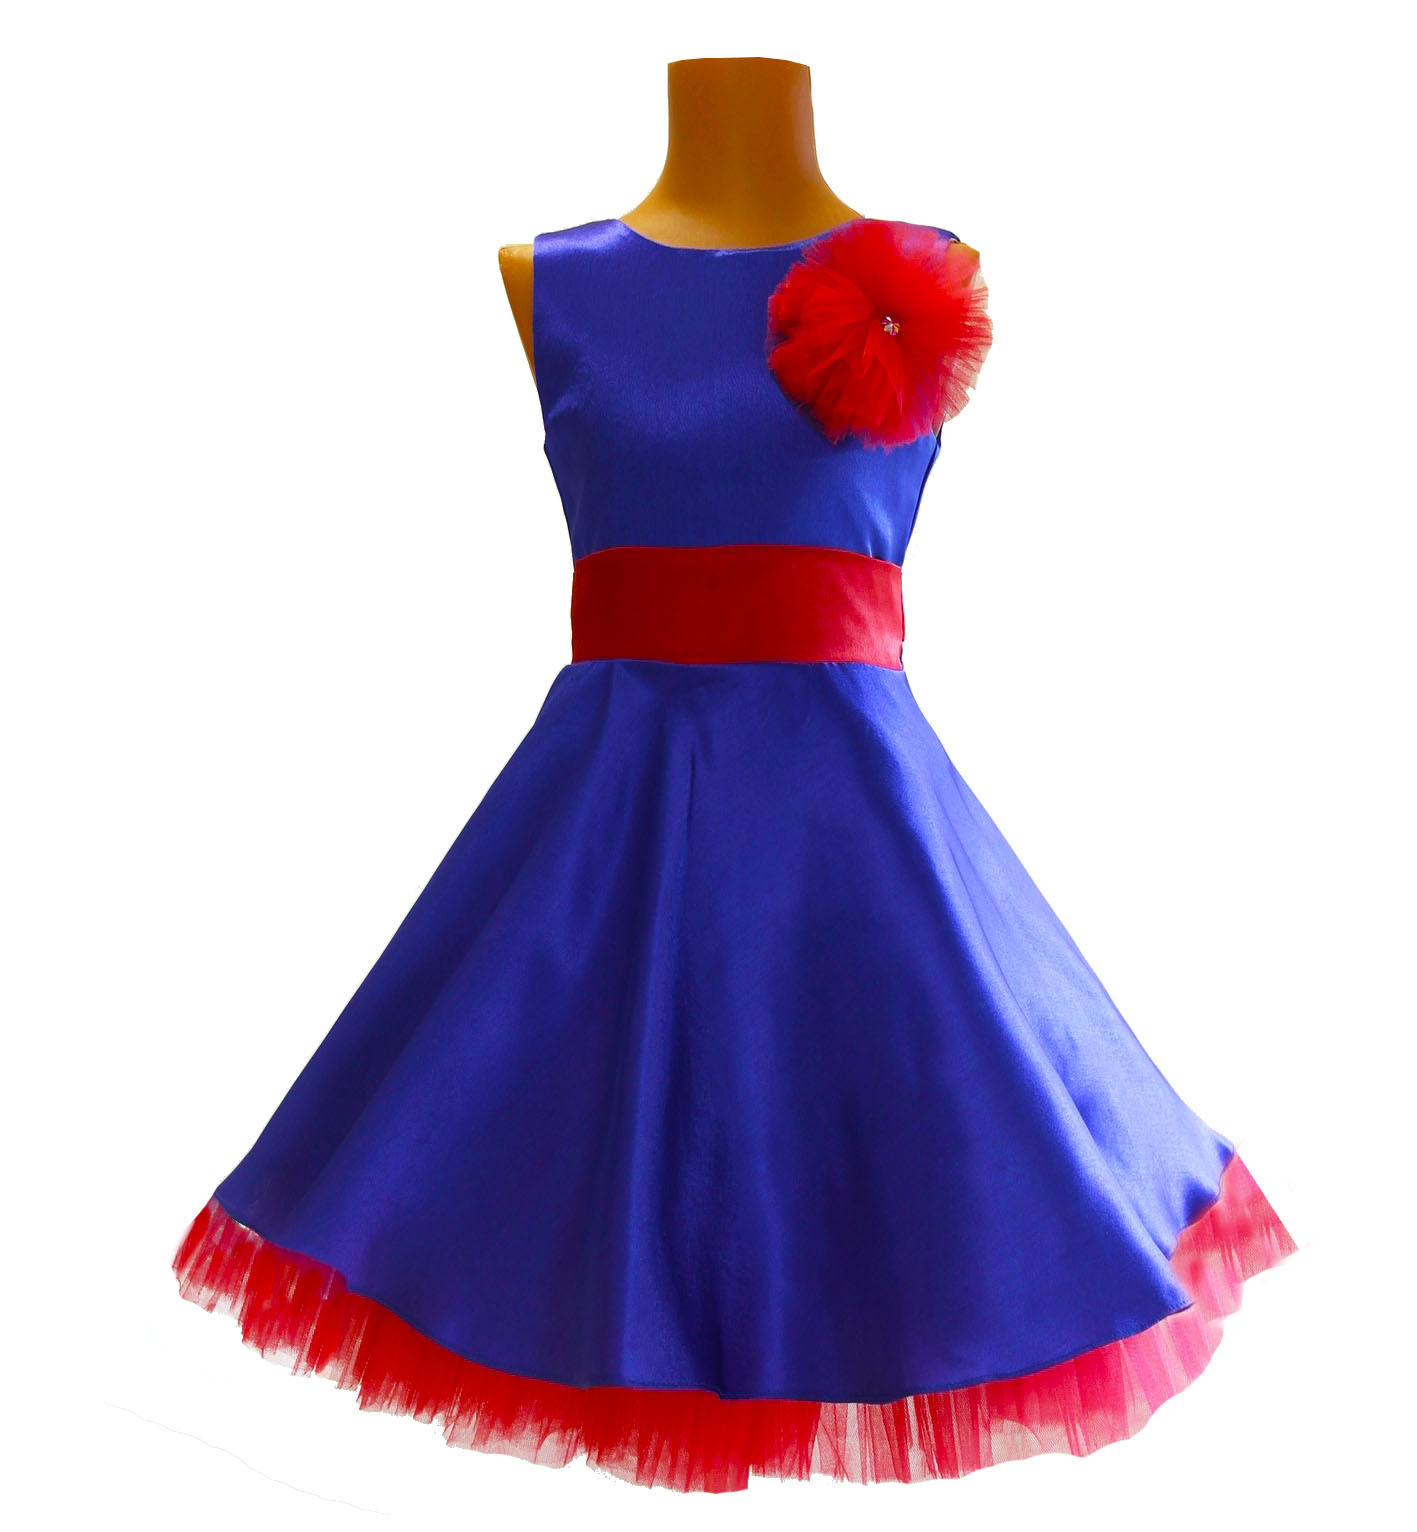 Платье красно синее белое. Платье Стиляги. Красно синее платье. Платье в стиле Стиляги. Платье красное с голубым.